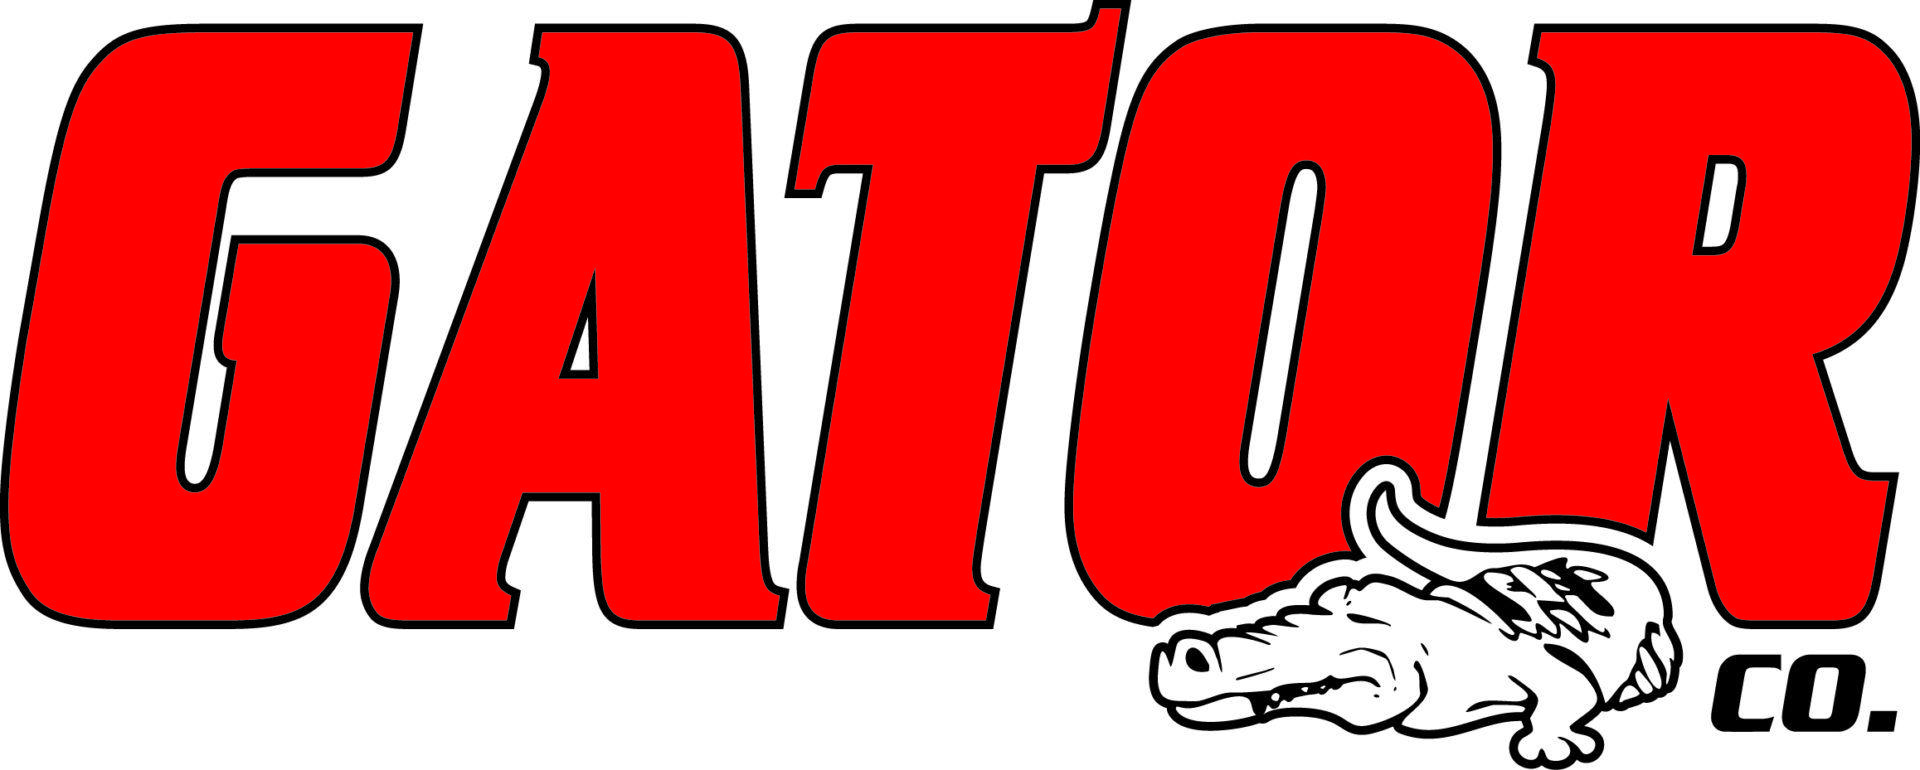 Red Gator Logo - Downloads